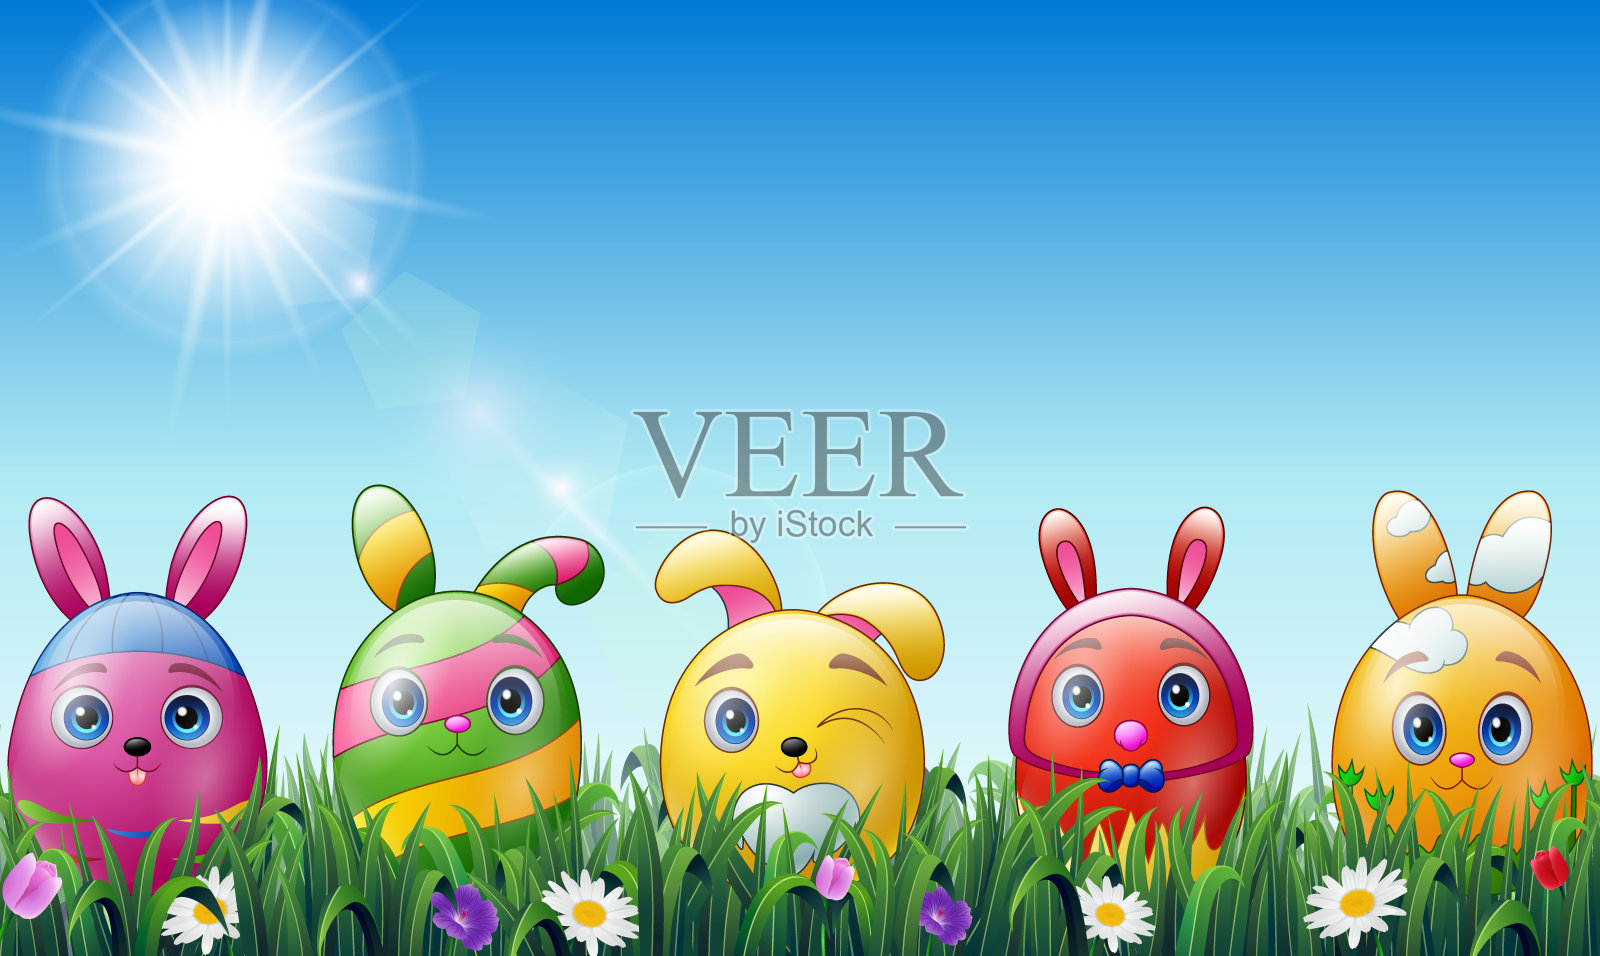 复活节彩蛋卡通人物与兔子耳朵在草的背景设计元素图片